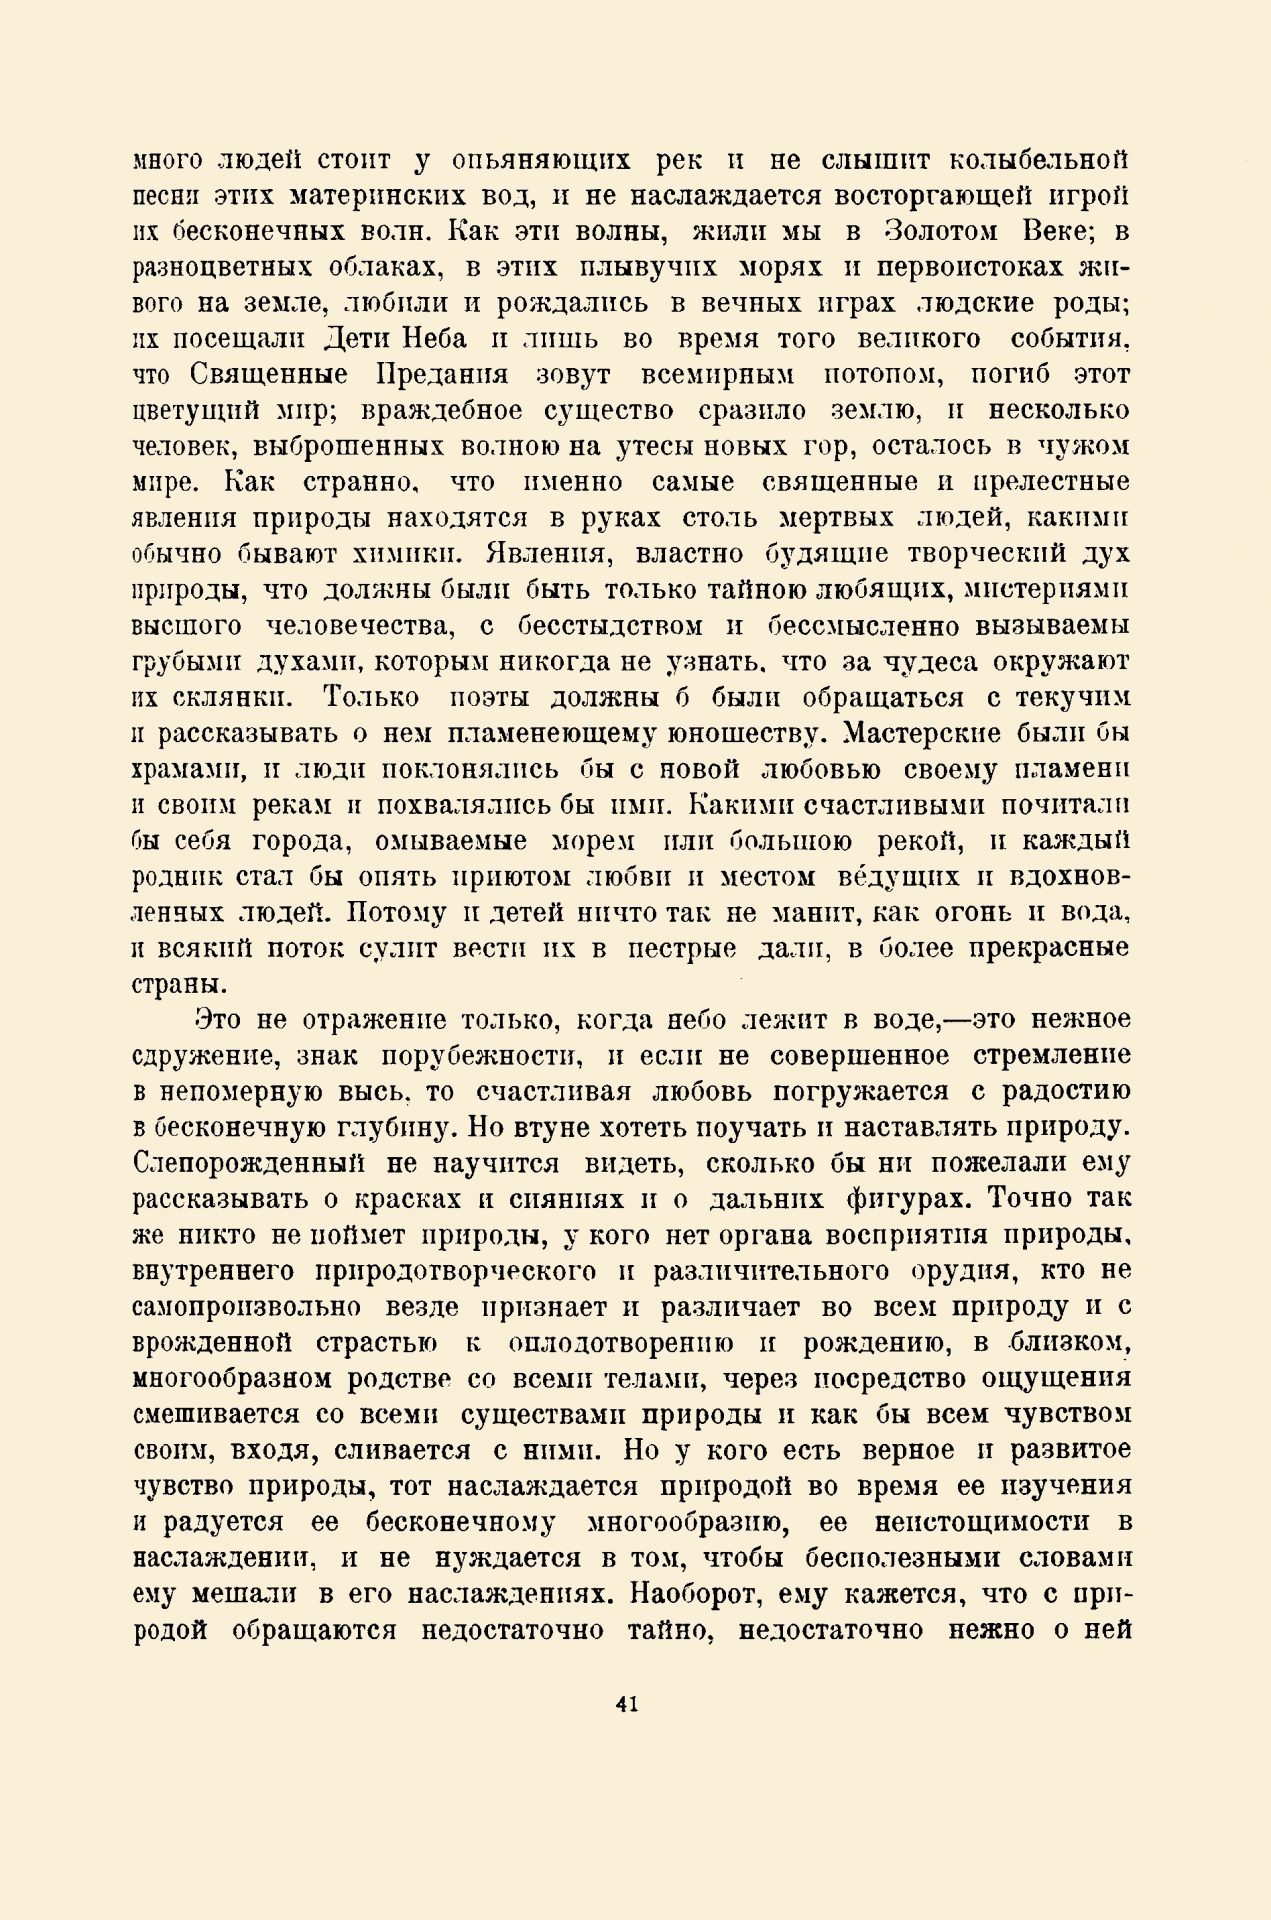 Пути творчества, 1920, № 6-7